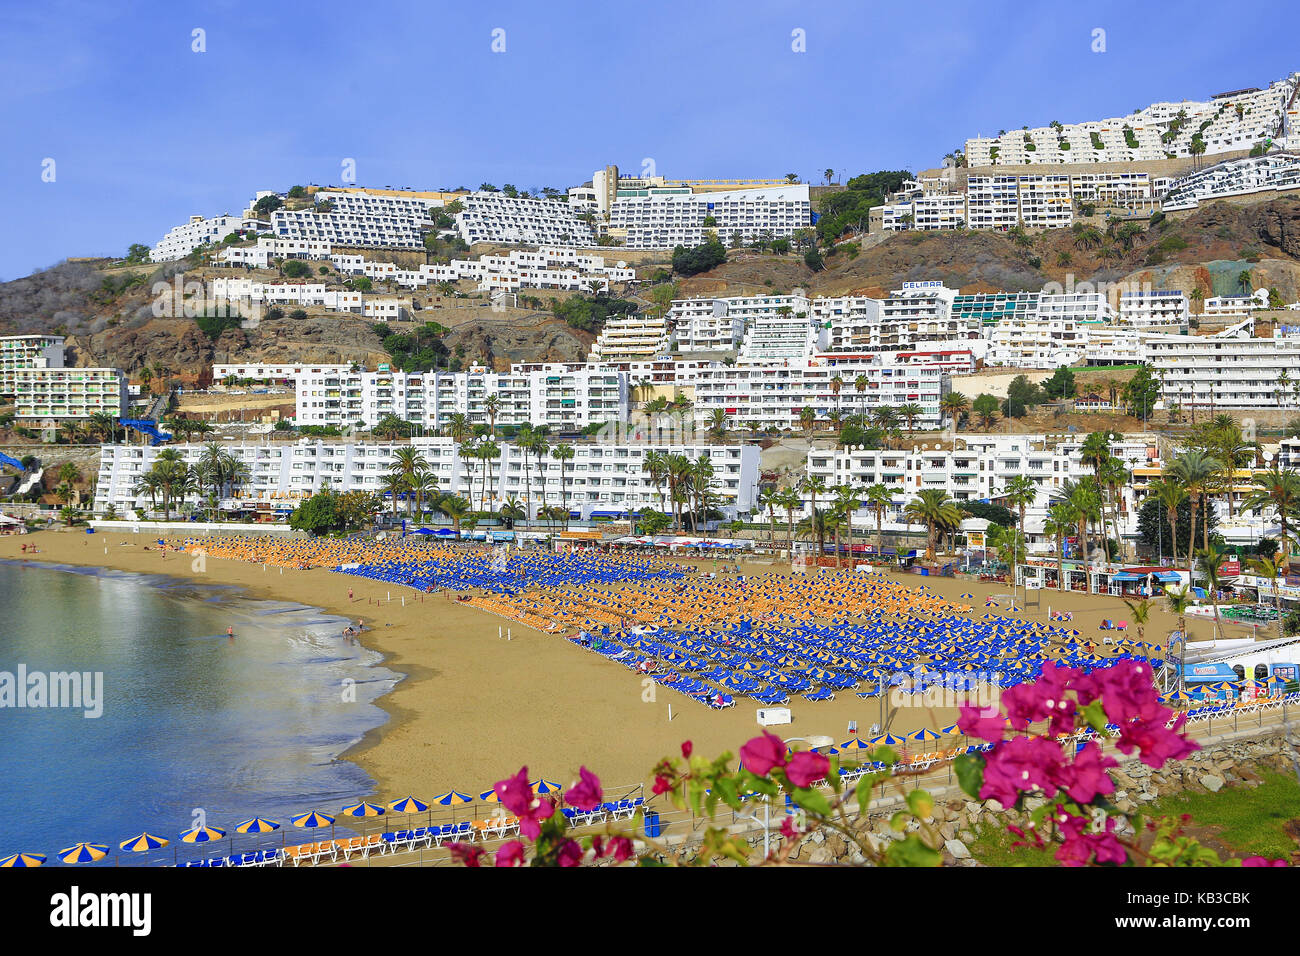 Espagne, canaries, Gran Canaria, puerto rico, plage, chaises longues, le tourisme de masse, Banque D'Images